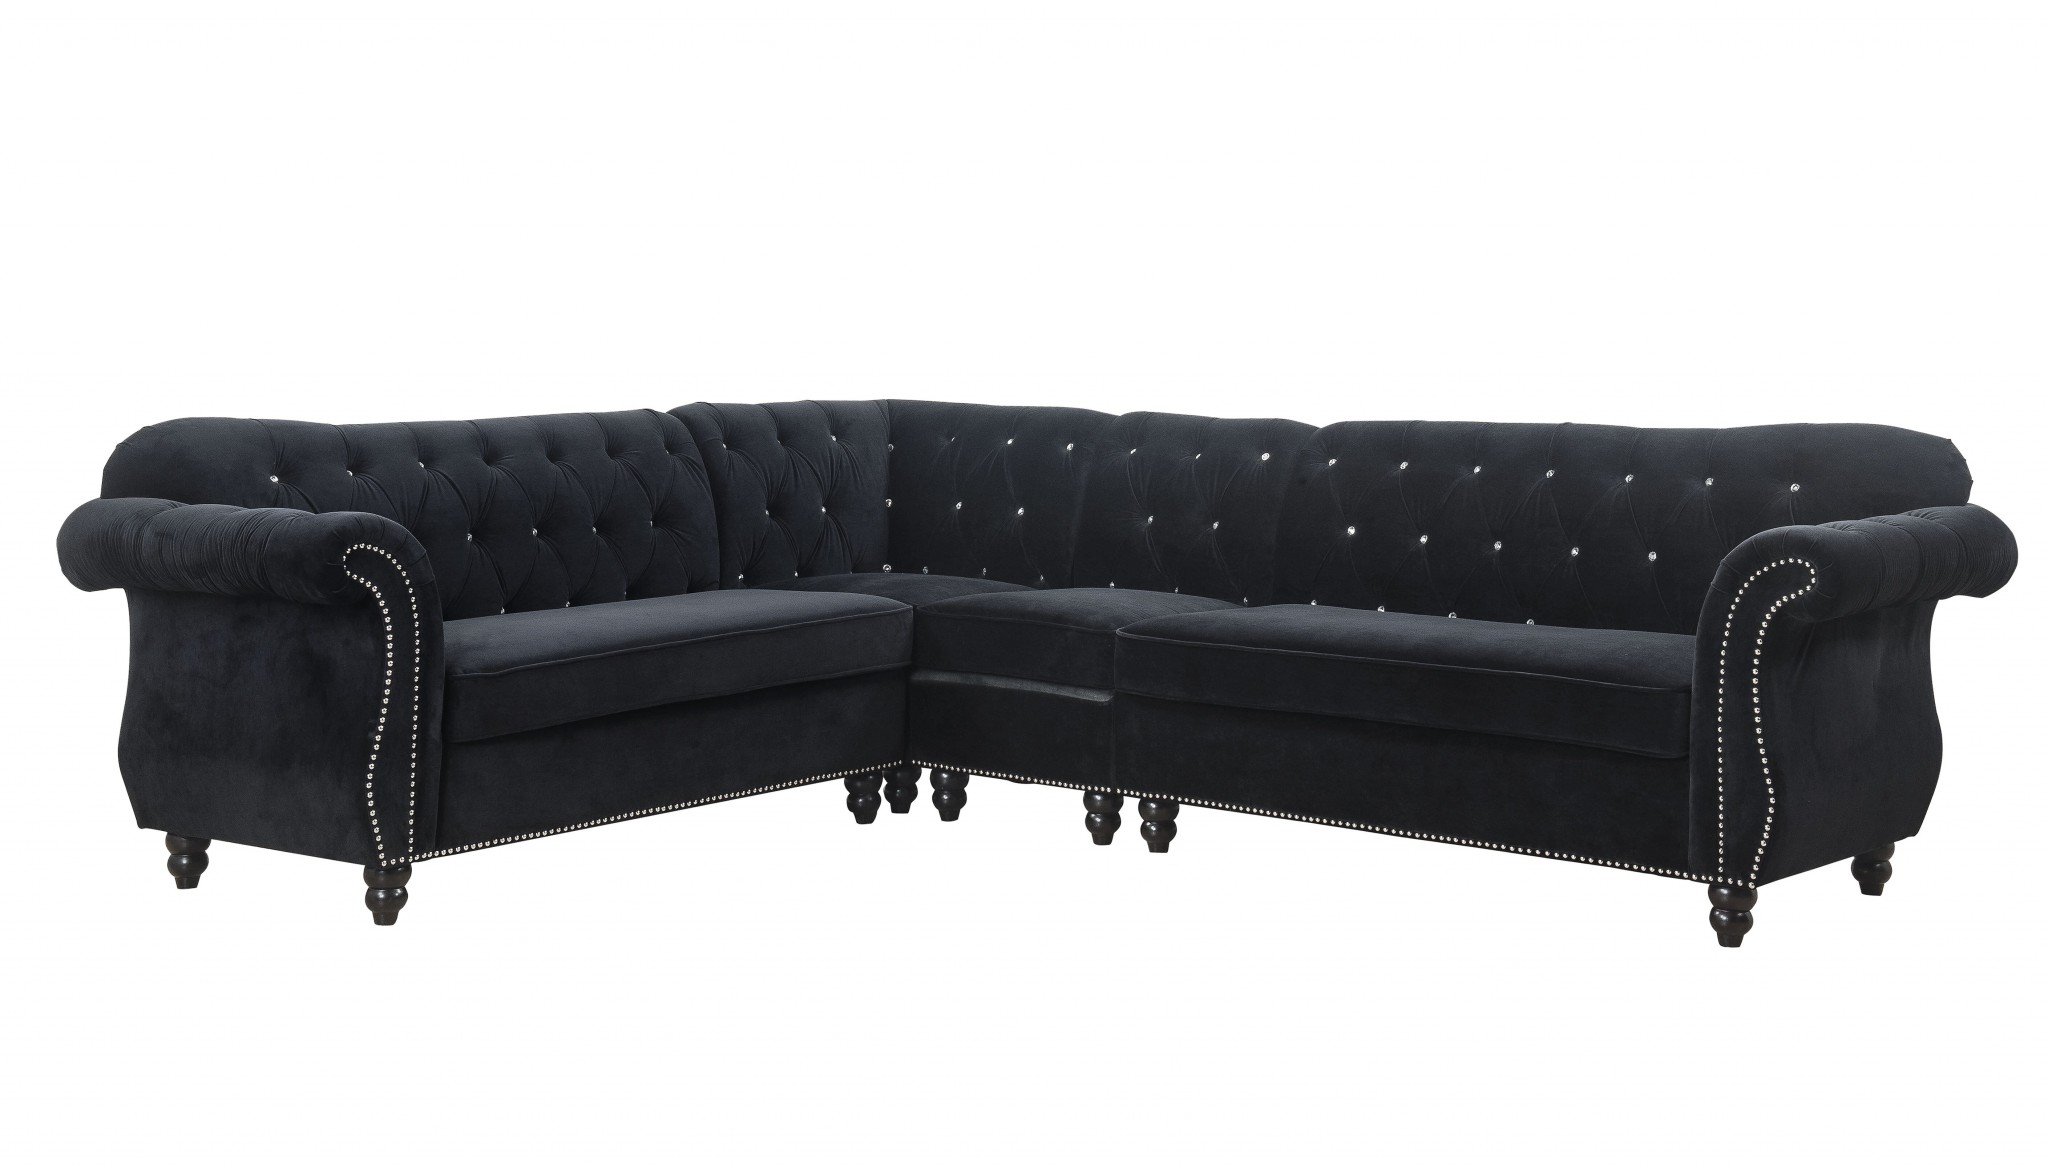 101" X 124" X 37" Black Velvet Upholstery Wood Leg Sectional Sofa